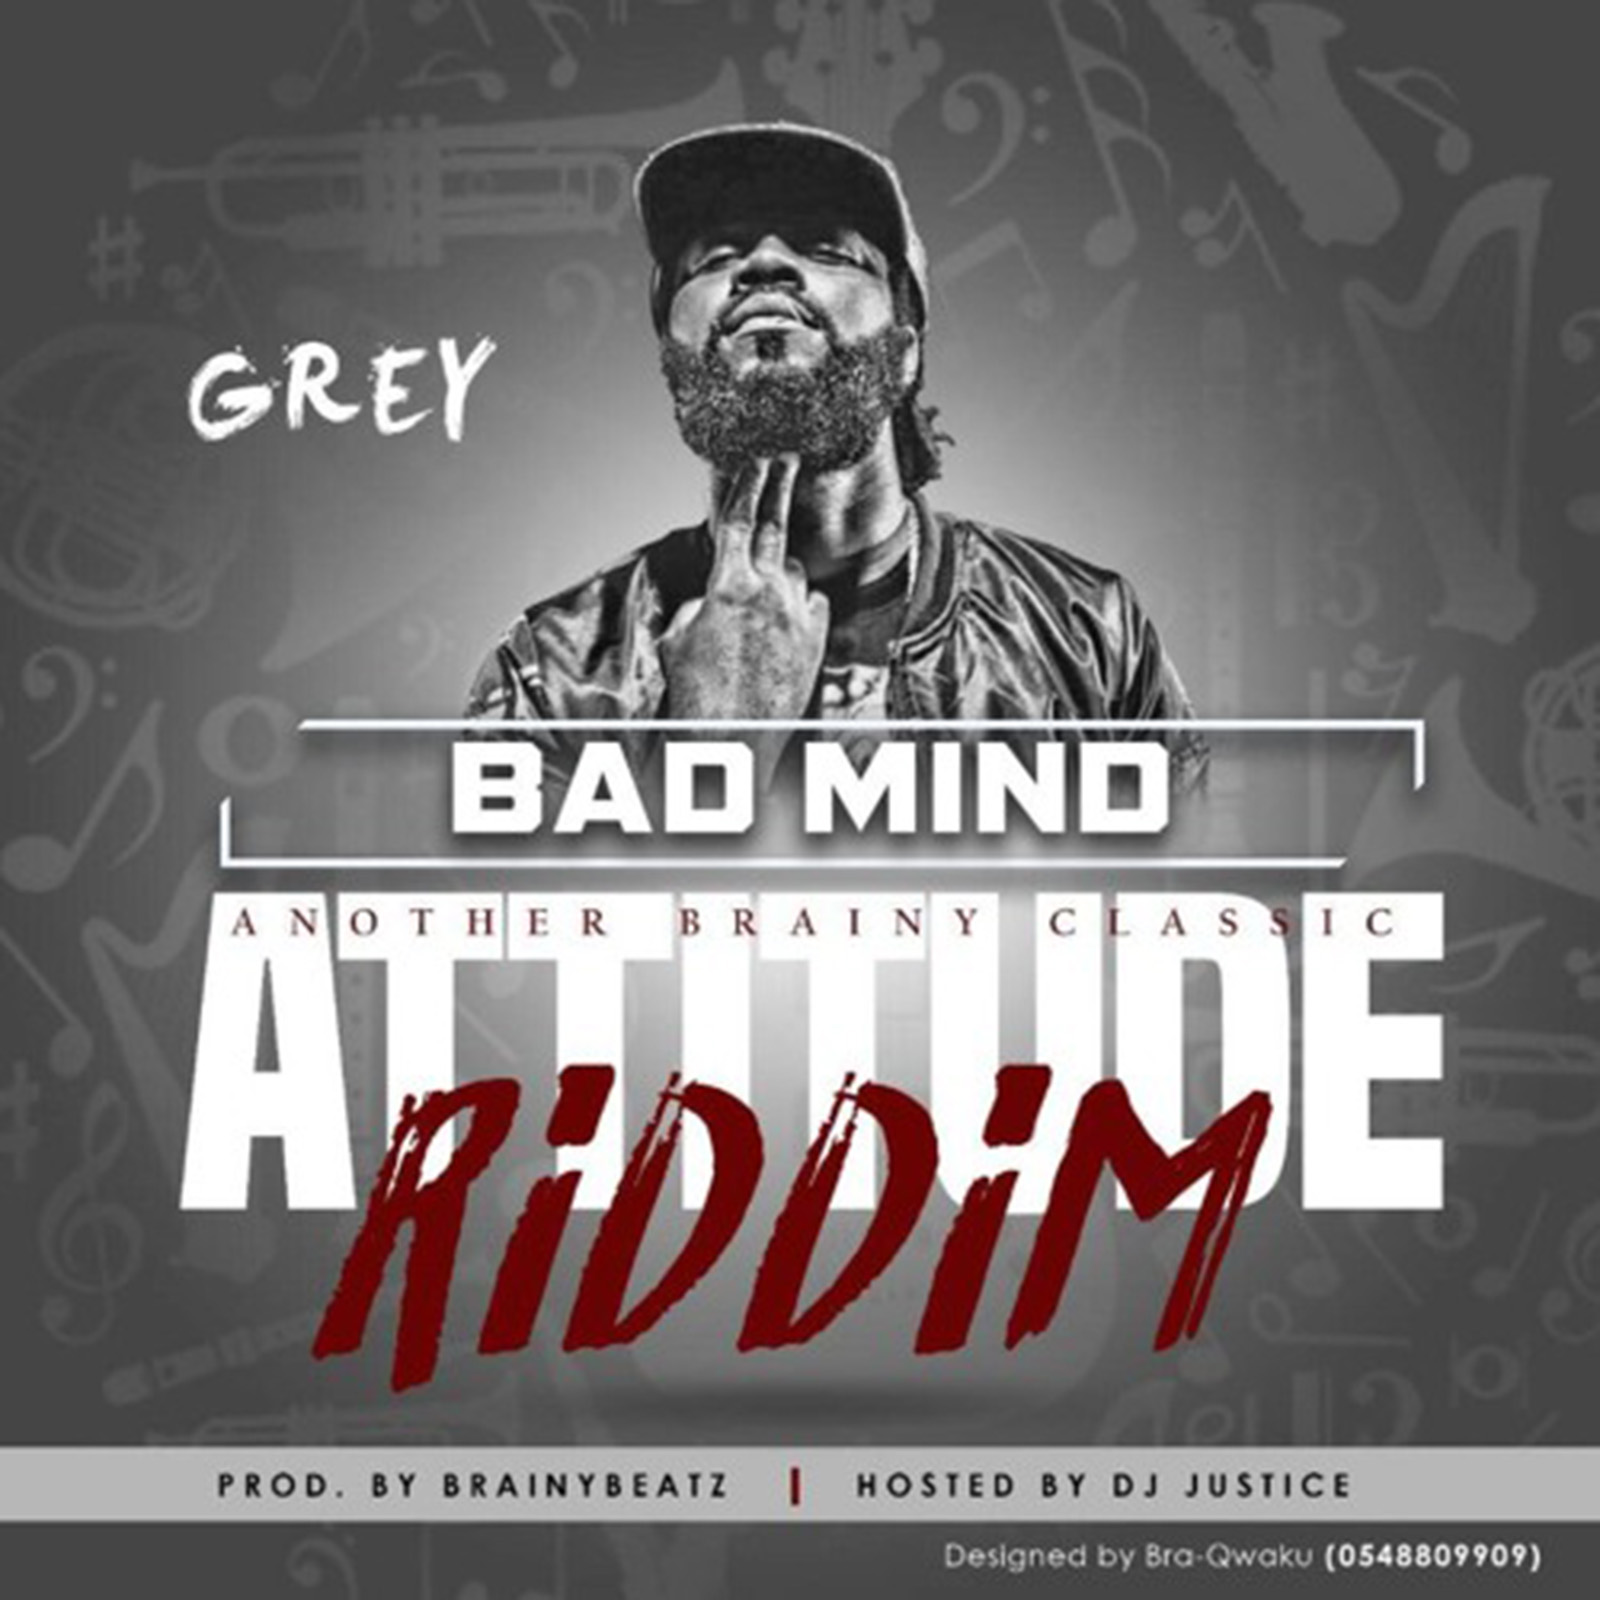 Bad Mind (Attitude Riddim) by Grey